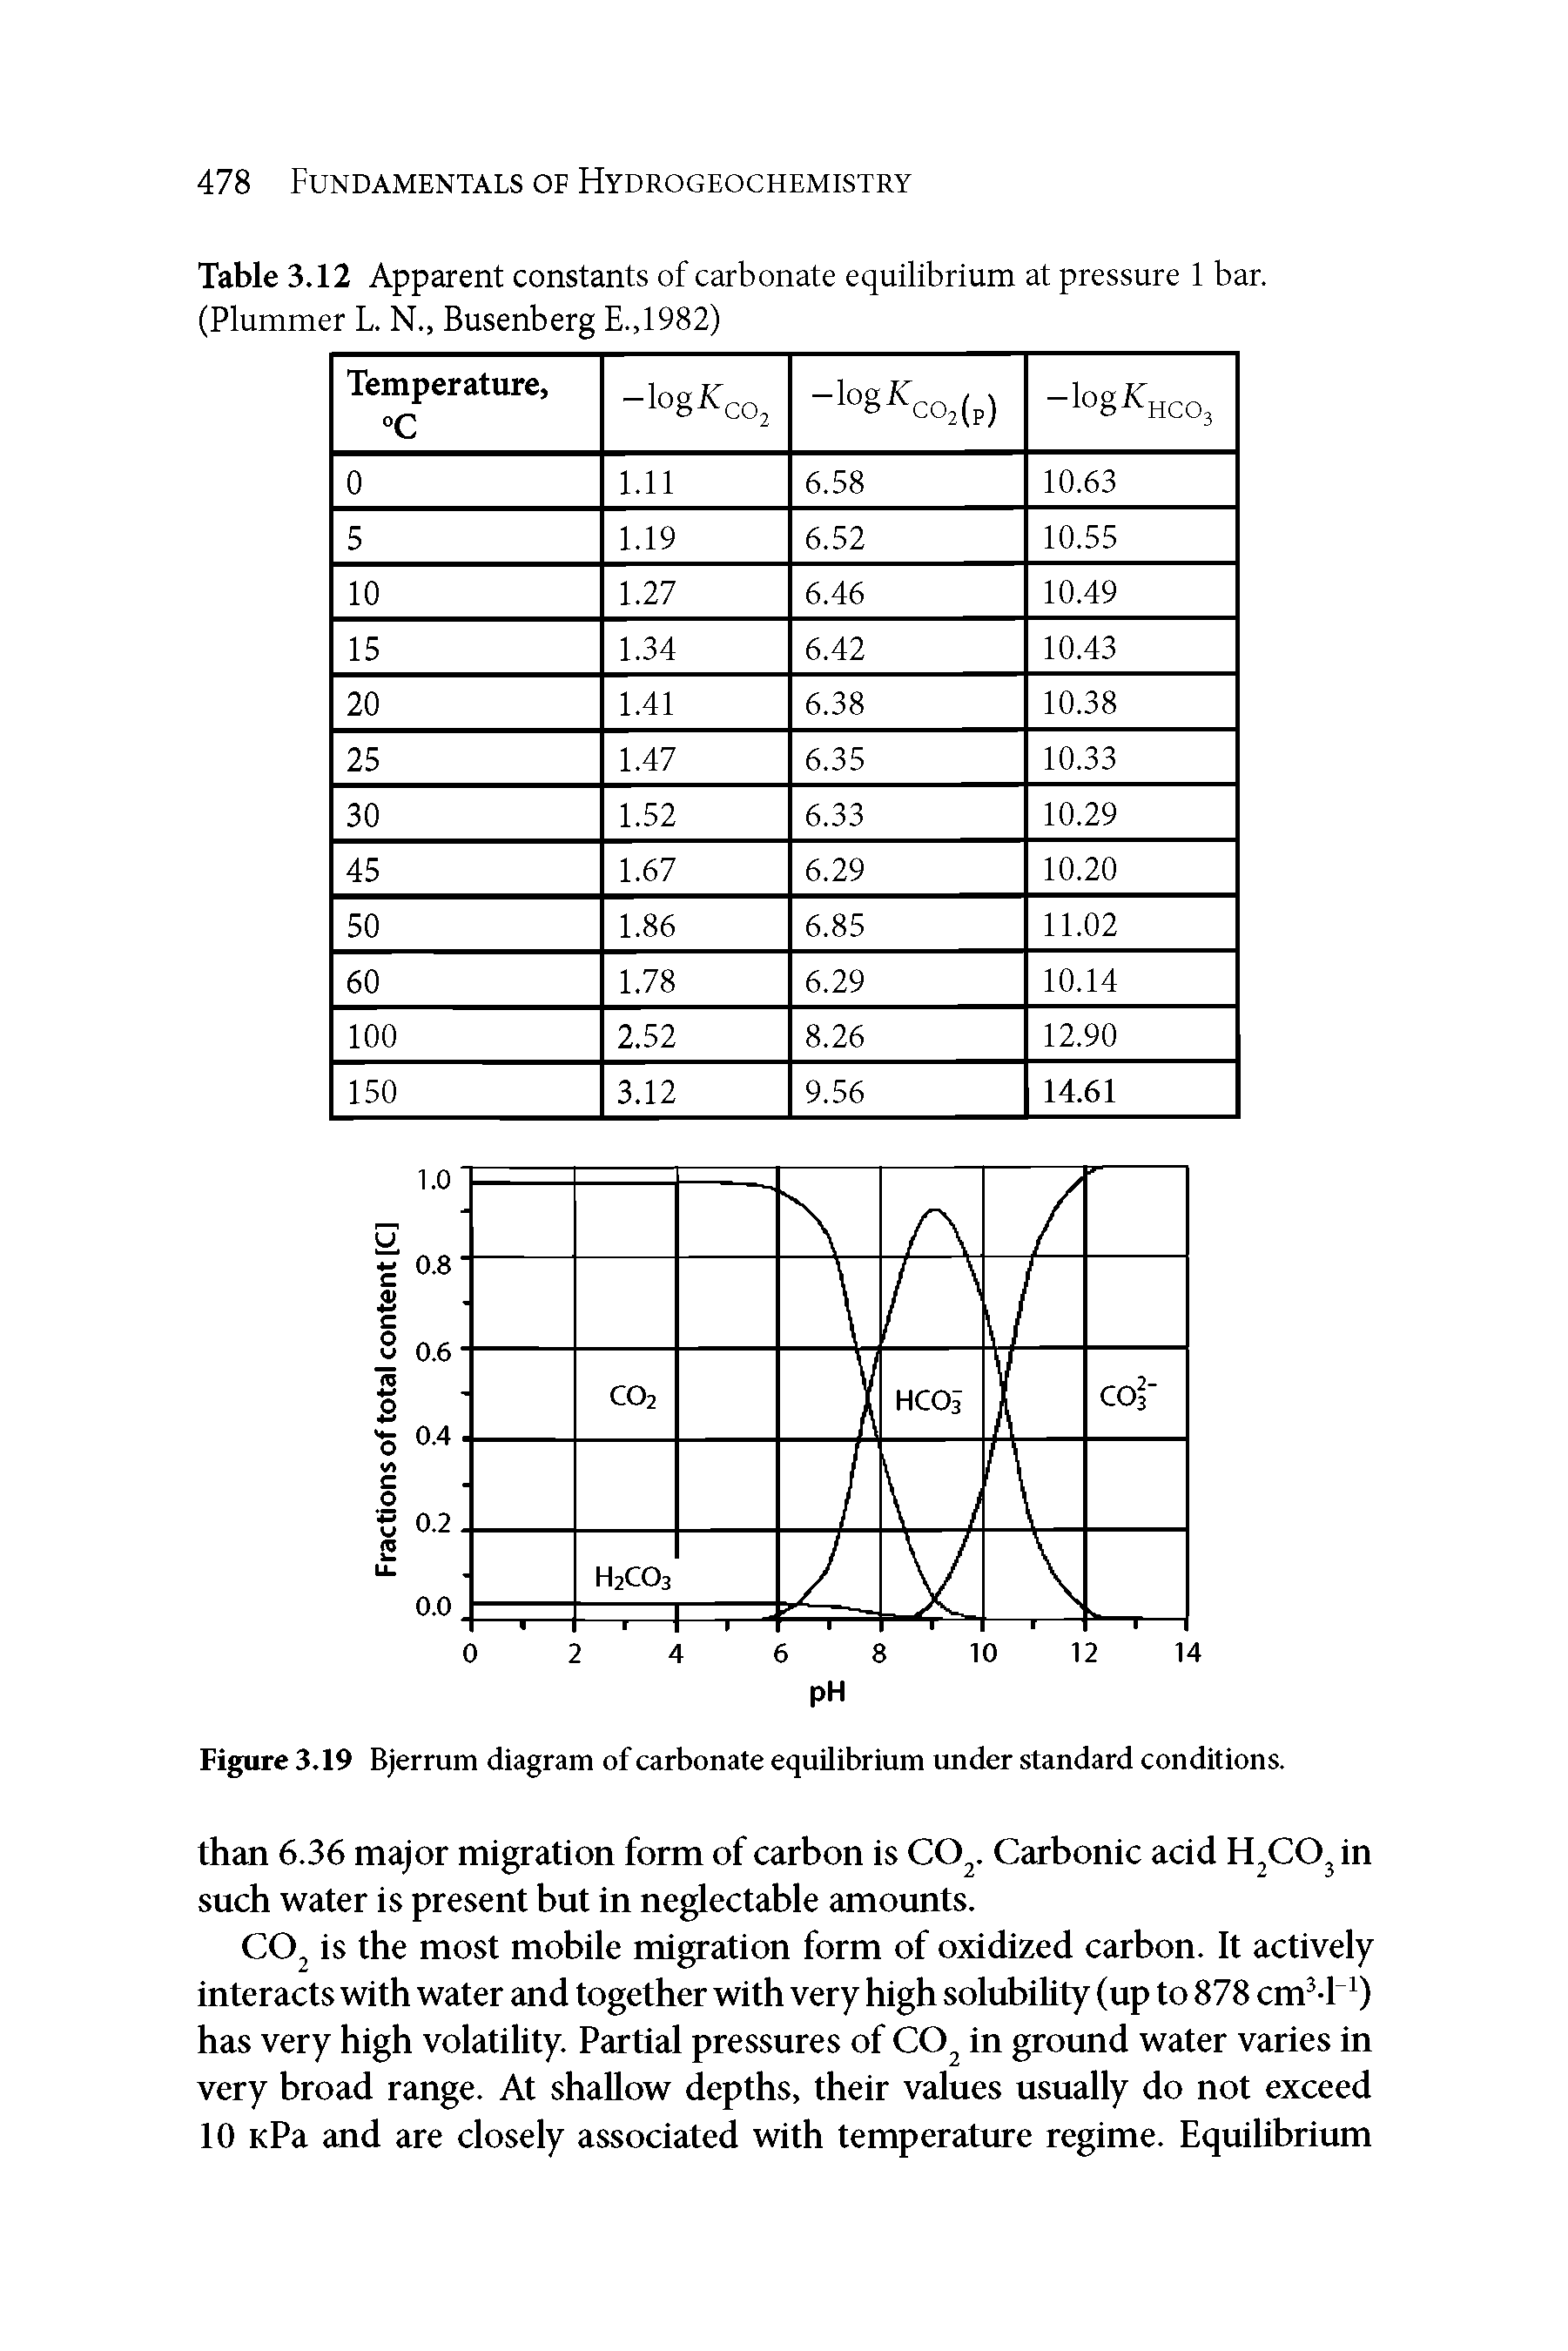 Figure 3.19 Bjerrum diagram of carbonate equilibrium under standard conditions.